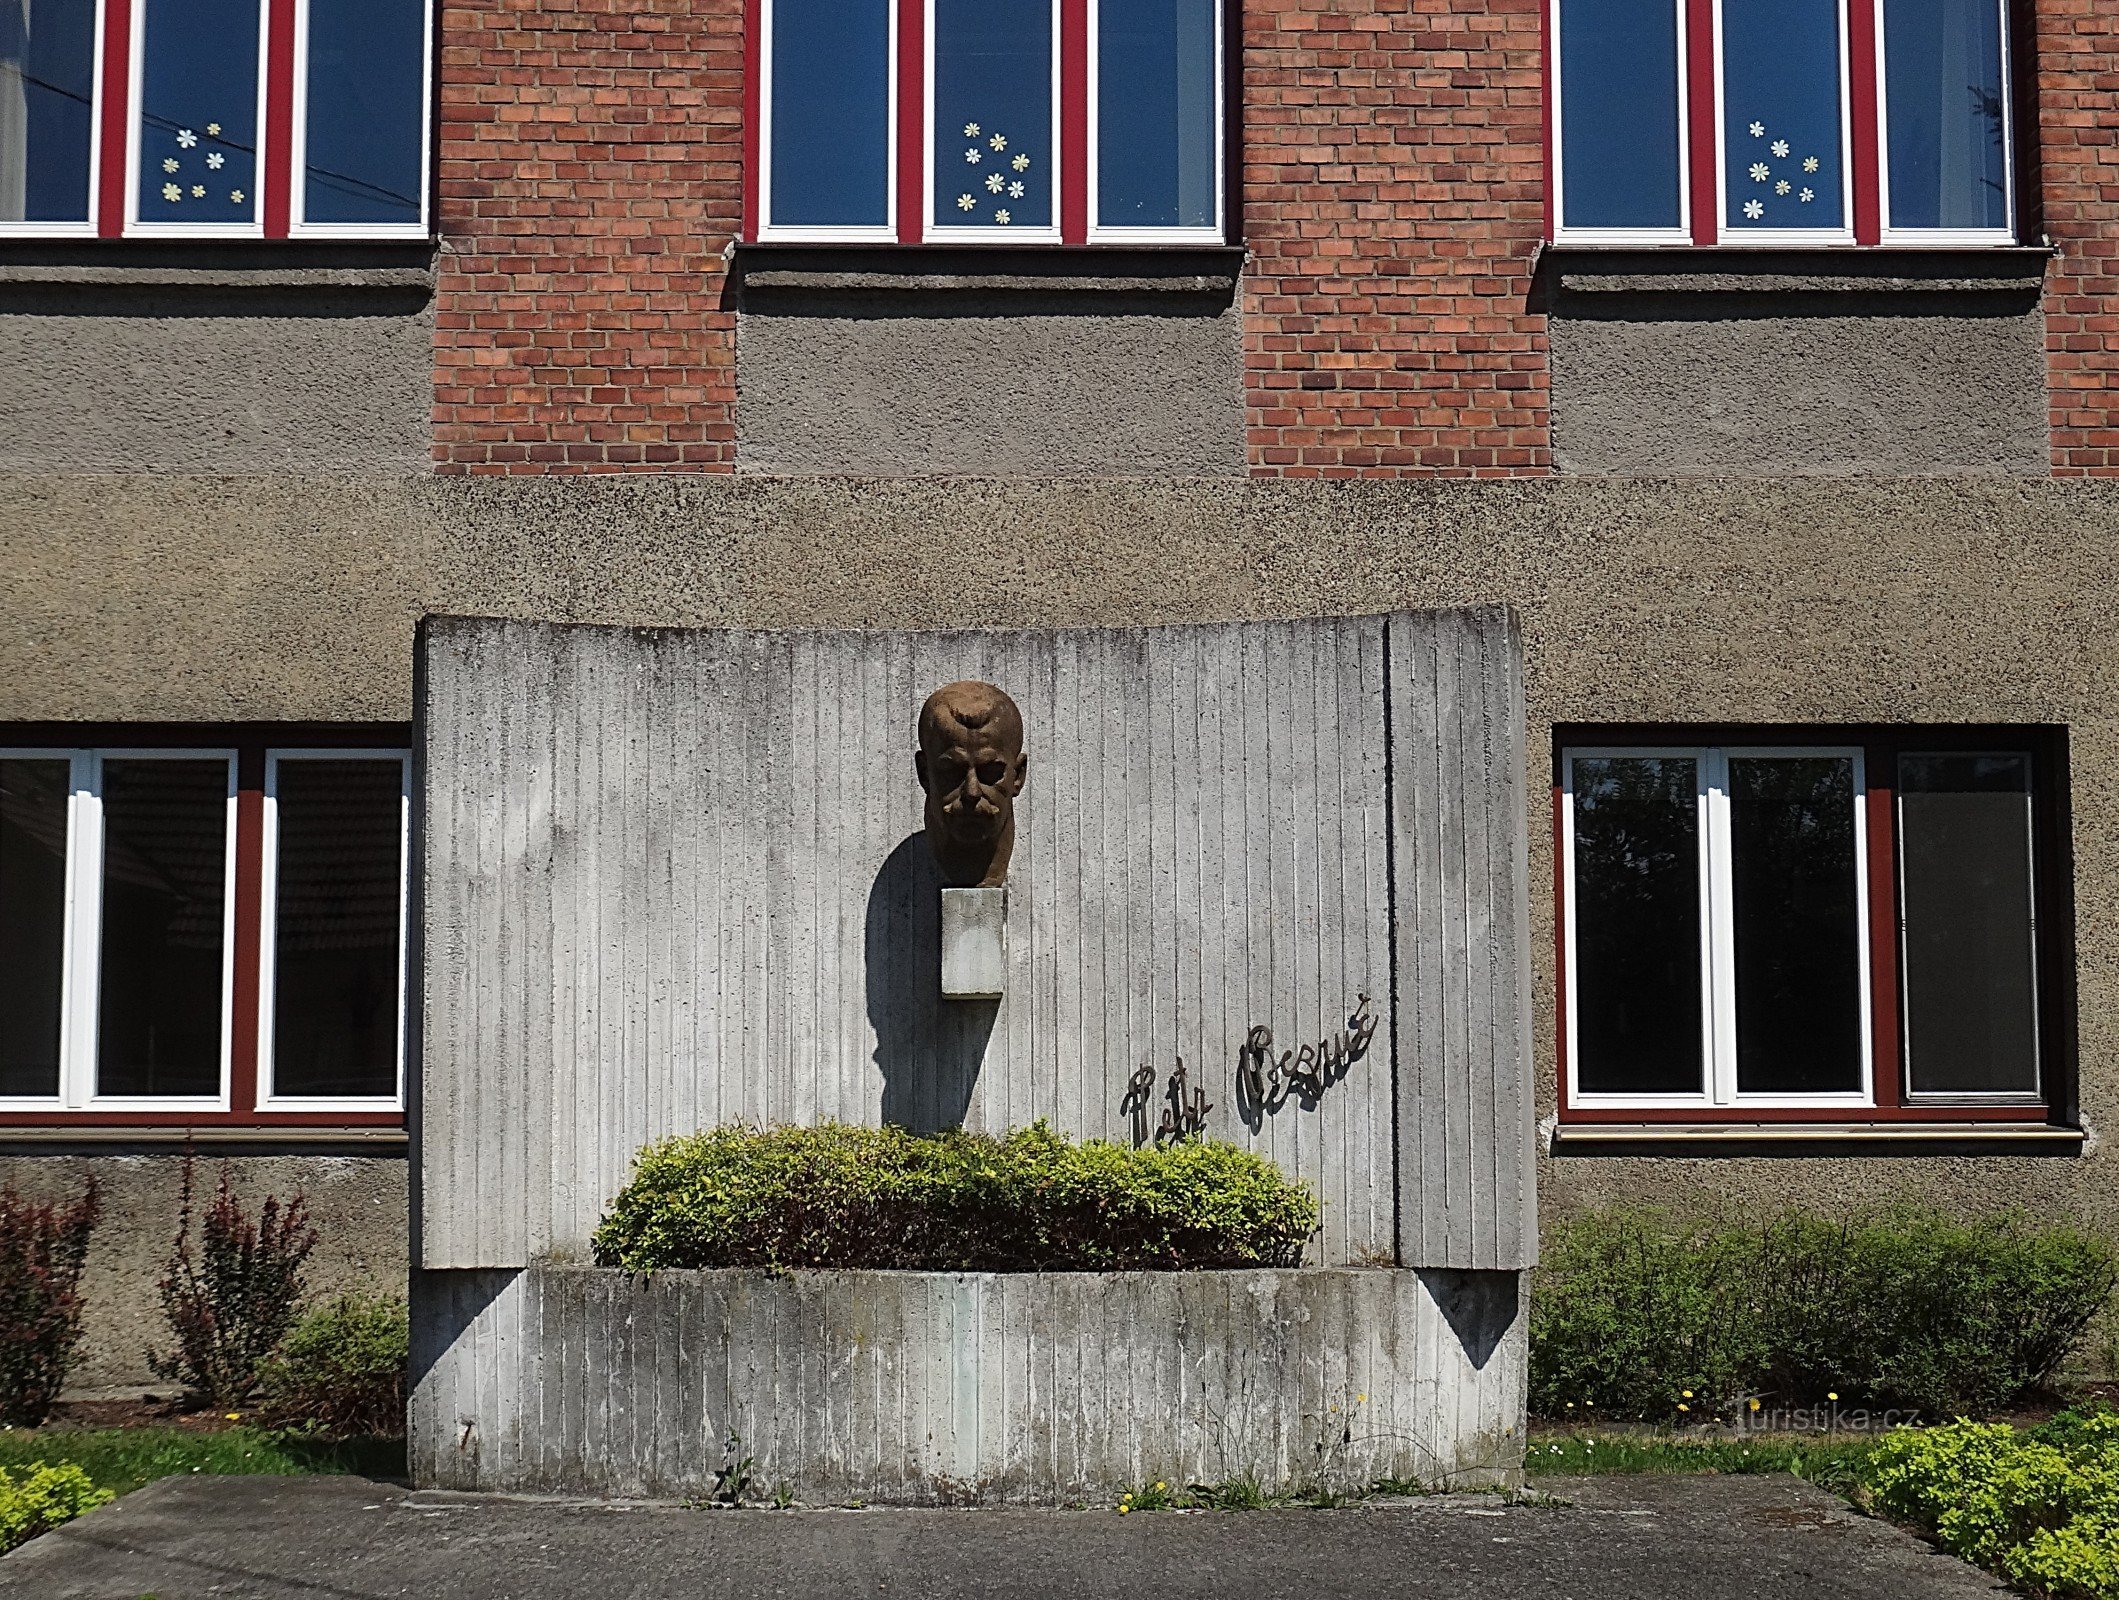 Istebník bust of P. Bezruč in front of the Czech school